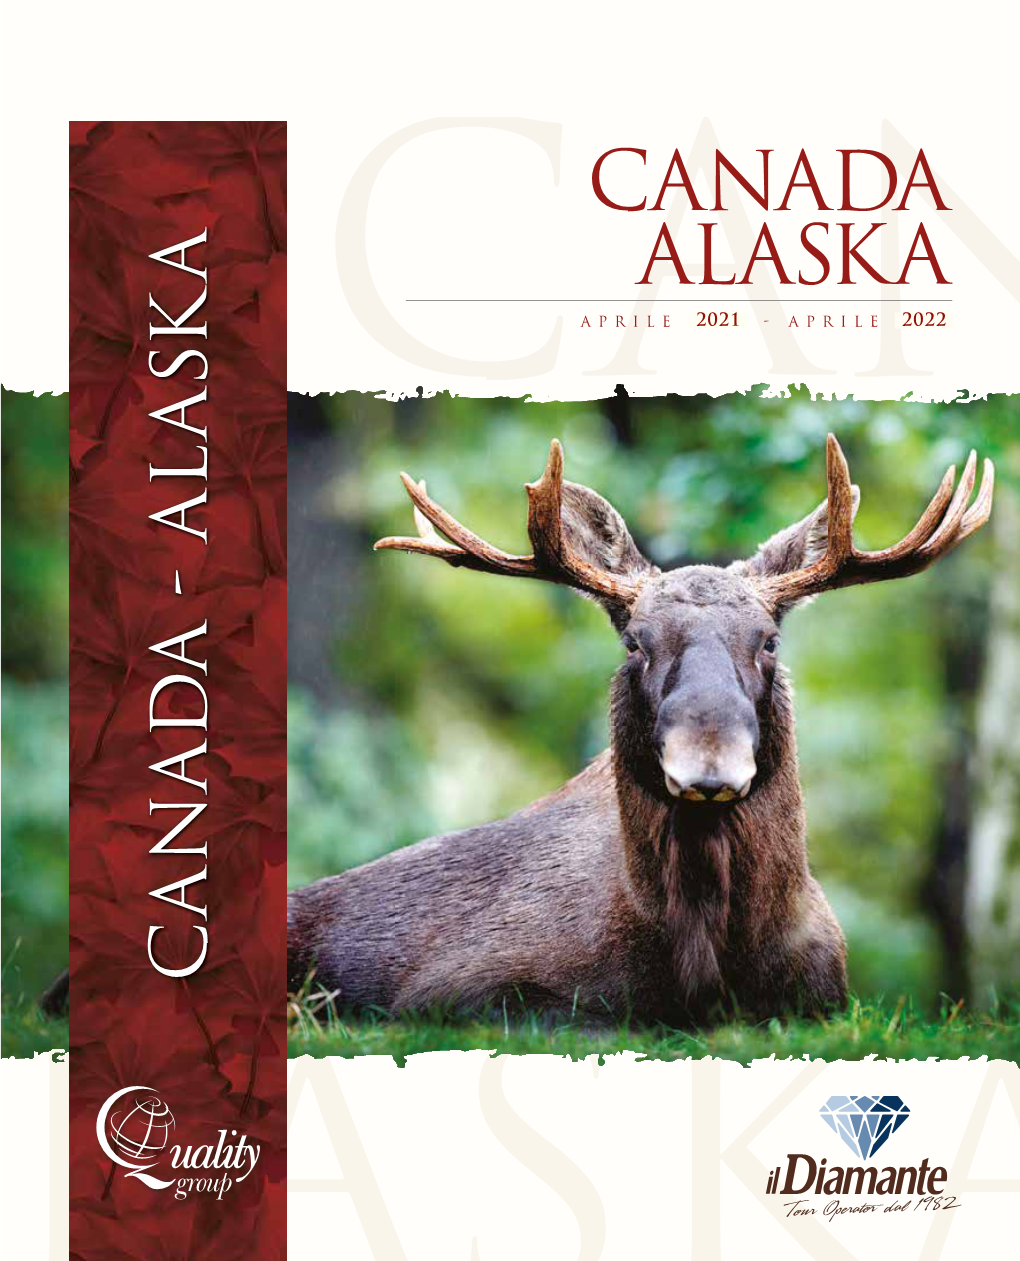 Canada Alaska